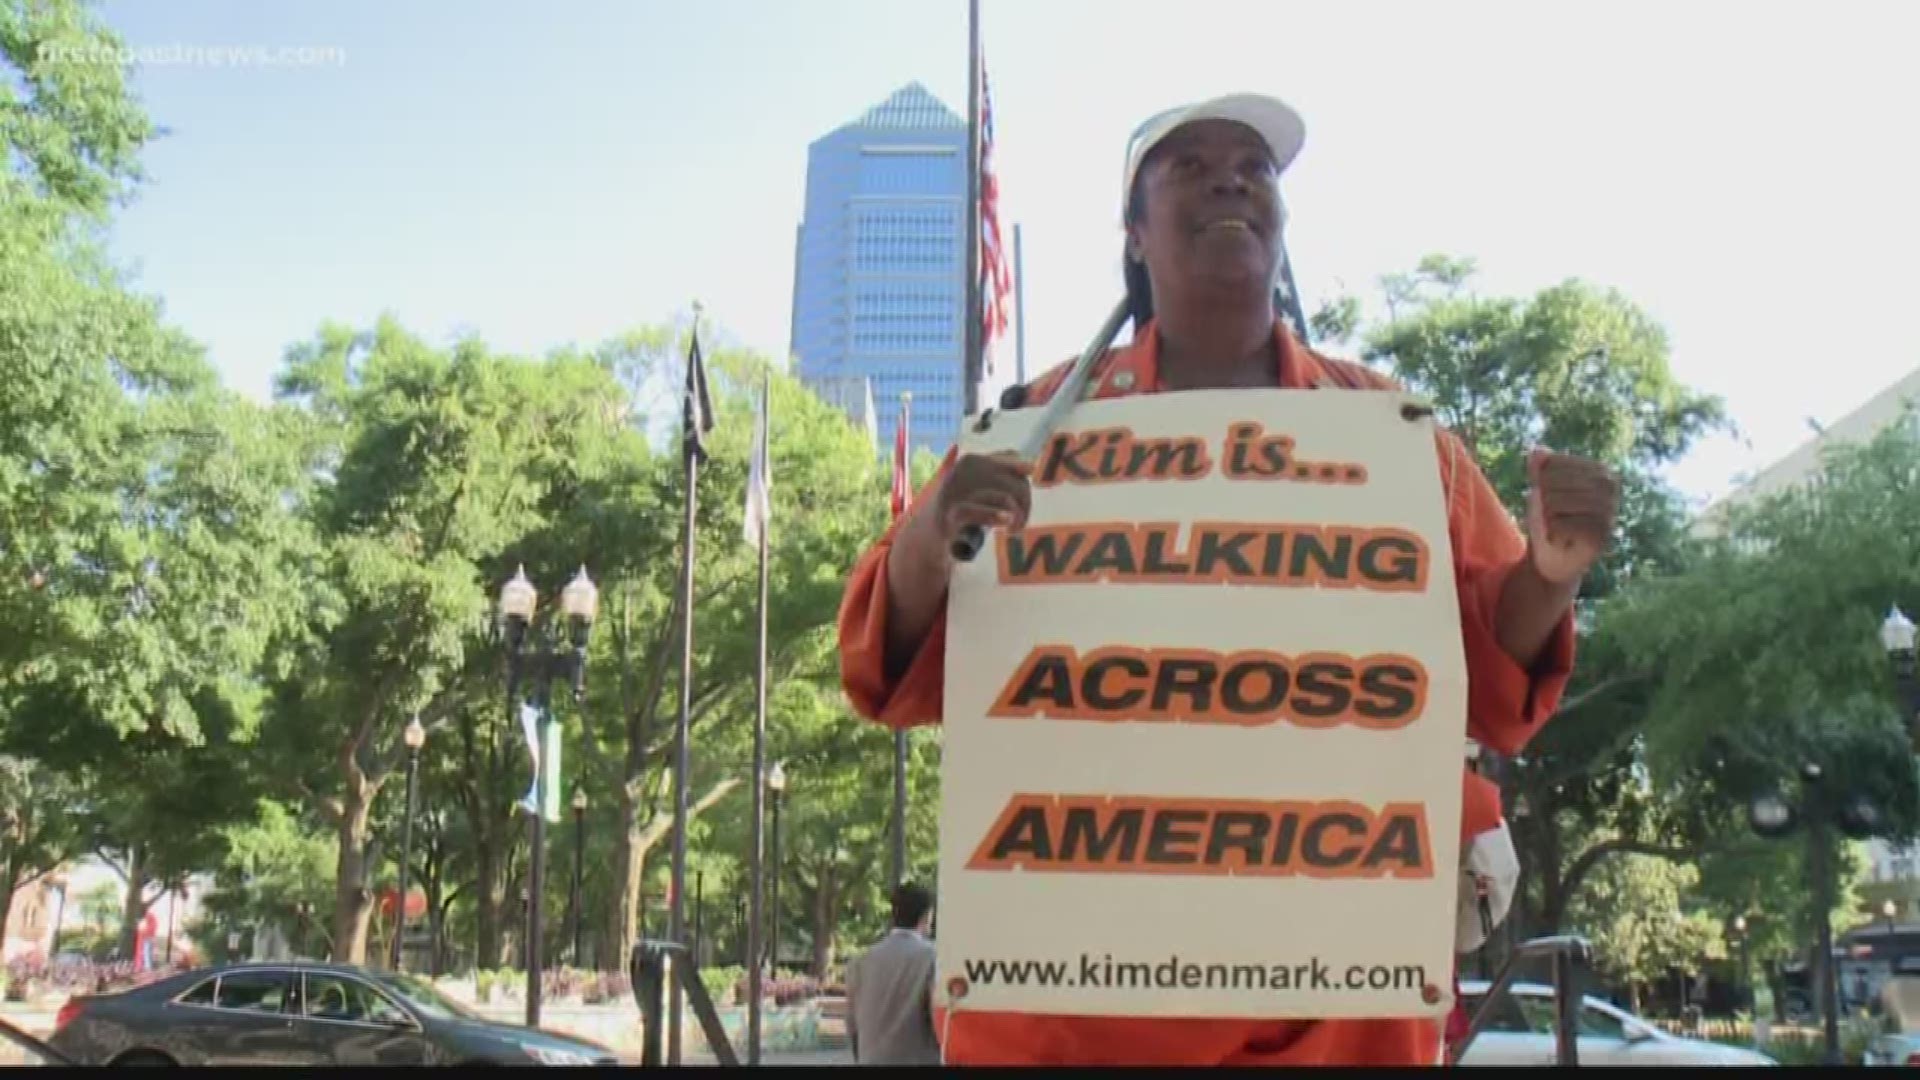 Kim Denmark has been walking across America to take homeless veterans off the street.